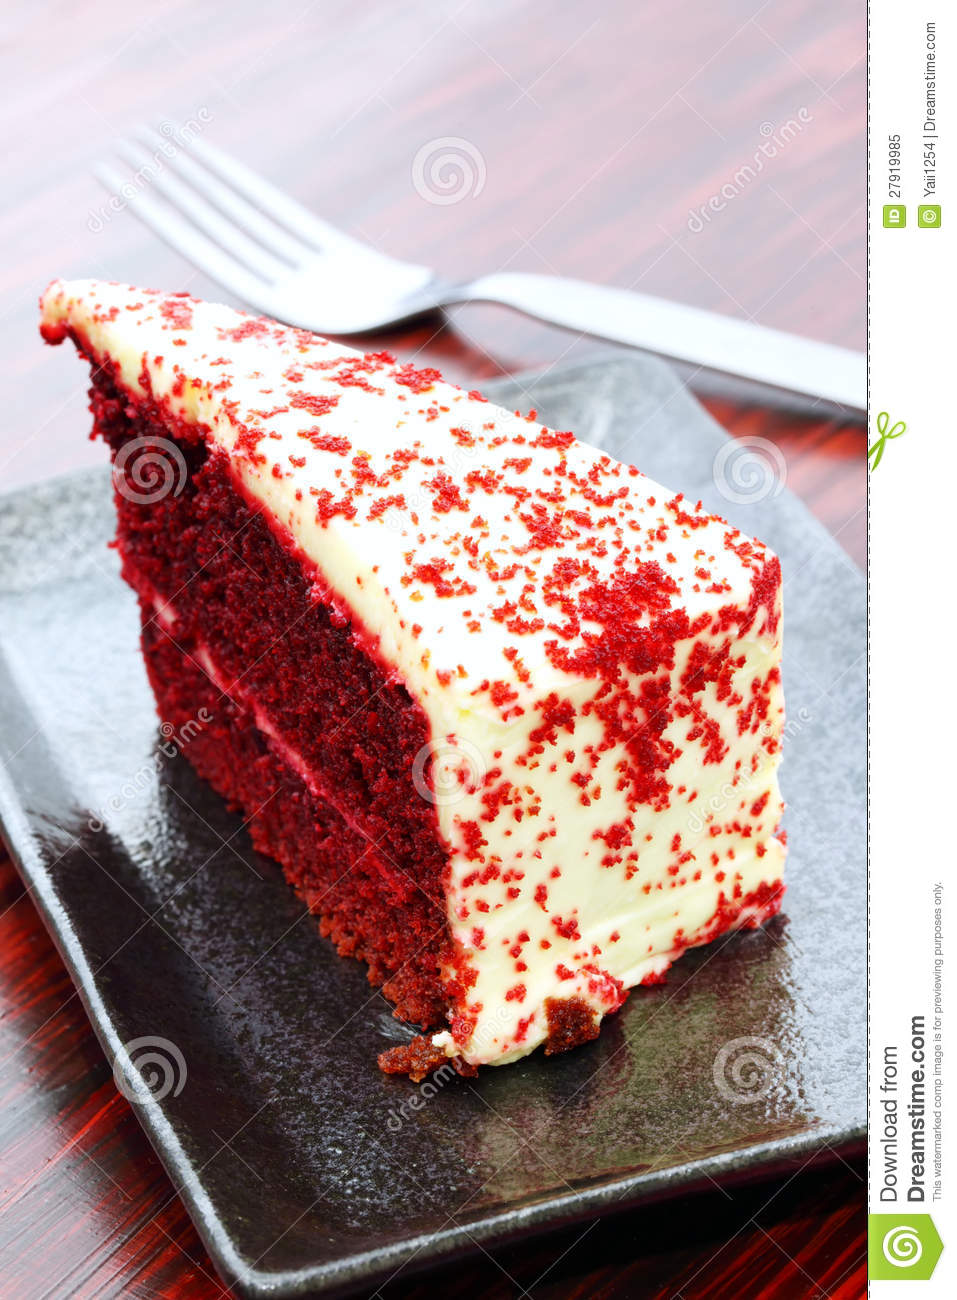 Red Velvet Cake Royalty Free Stock Photo   Image  27919985